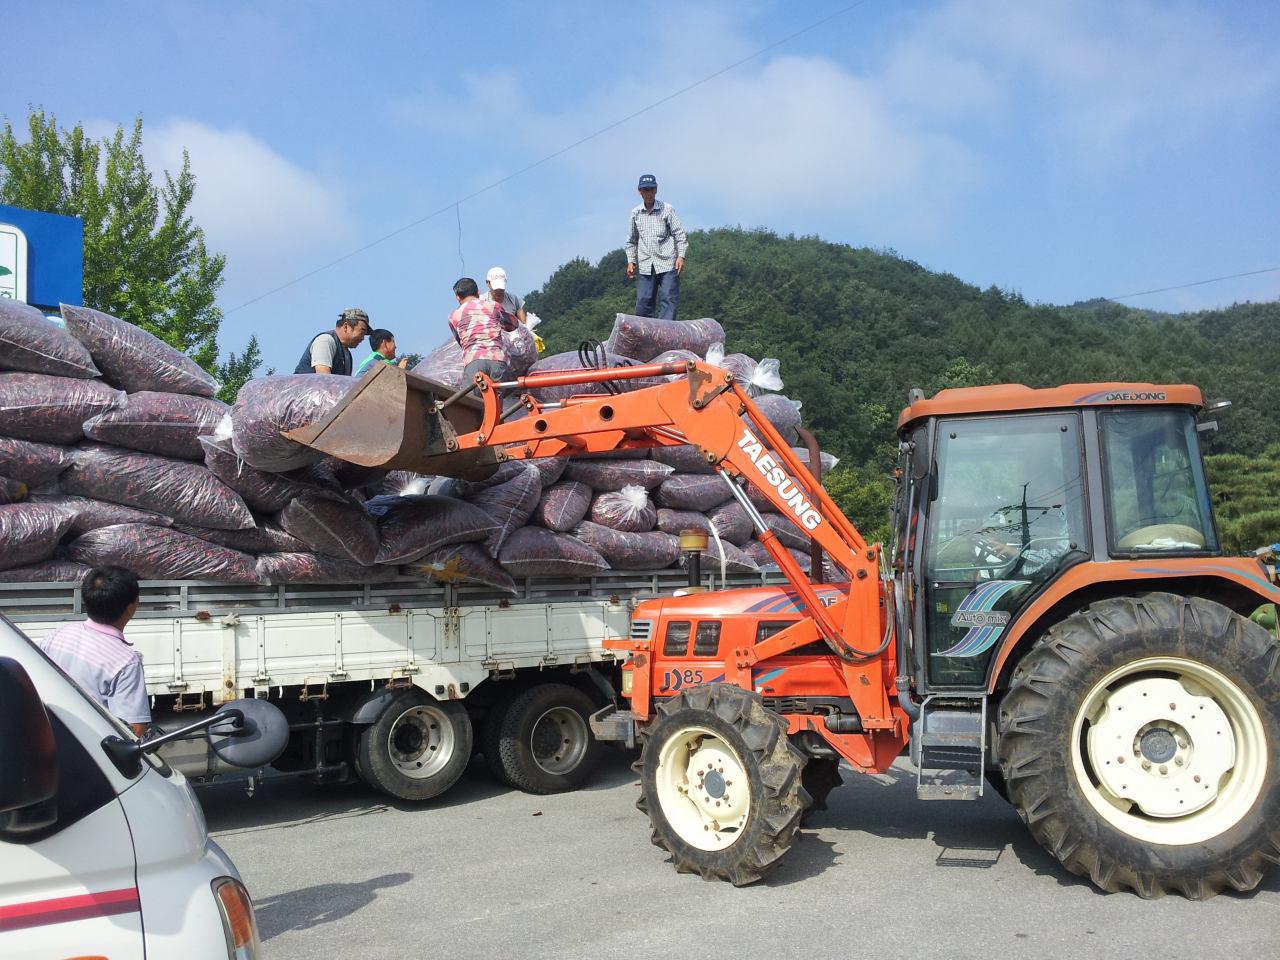 예천의 고추농가와 계약 재배한 고추를 수집하는 날, 5톤 트럭과 트렉터 동원